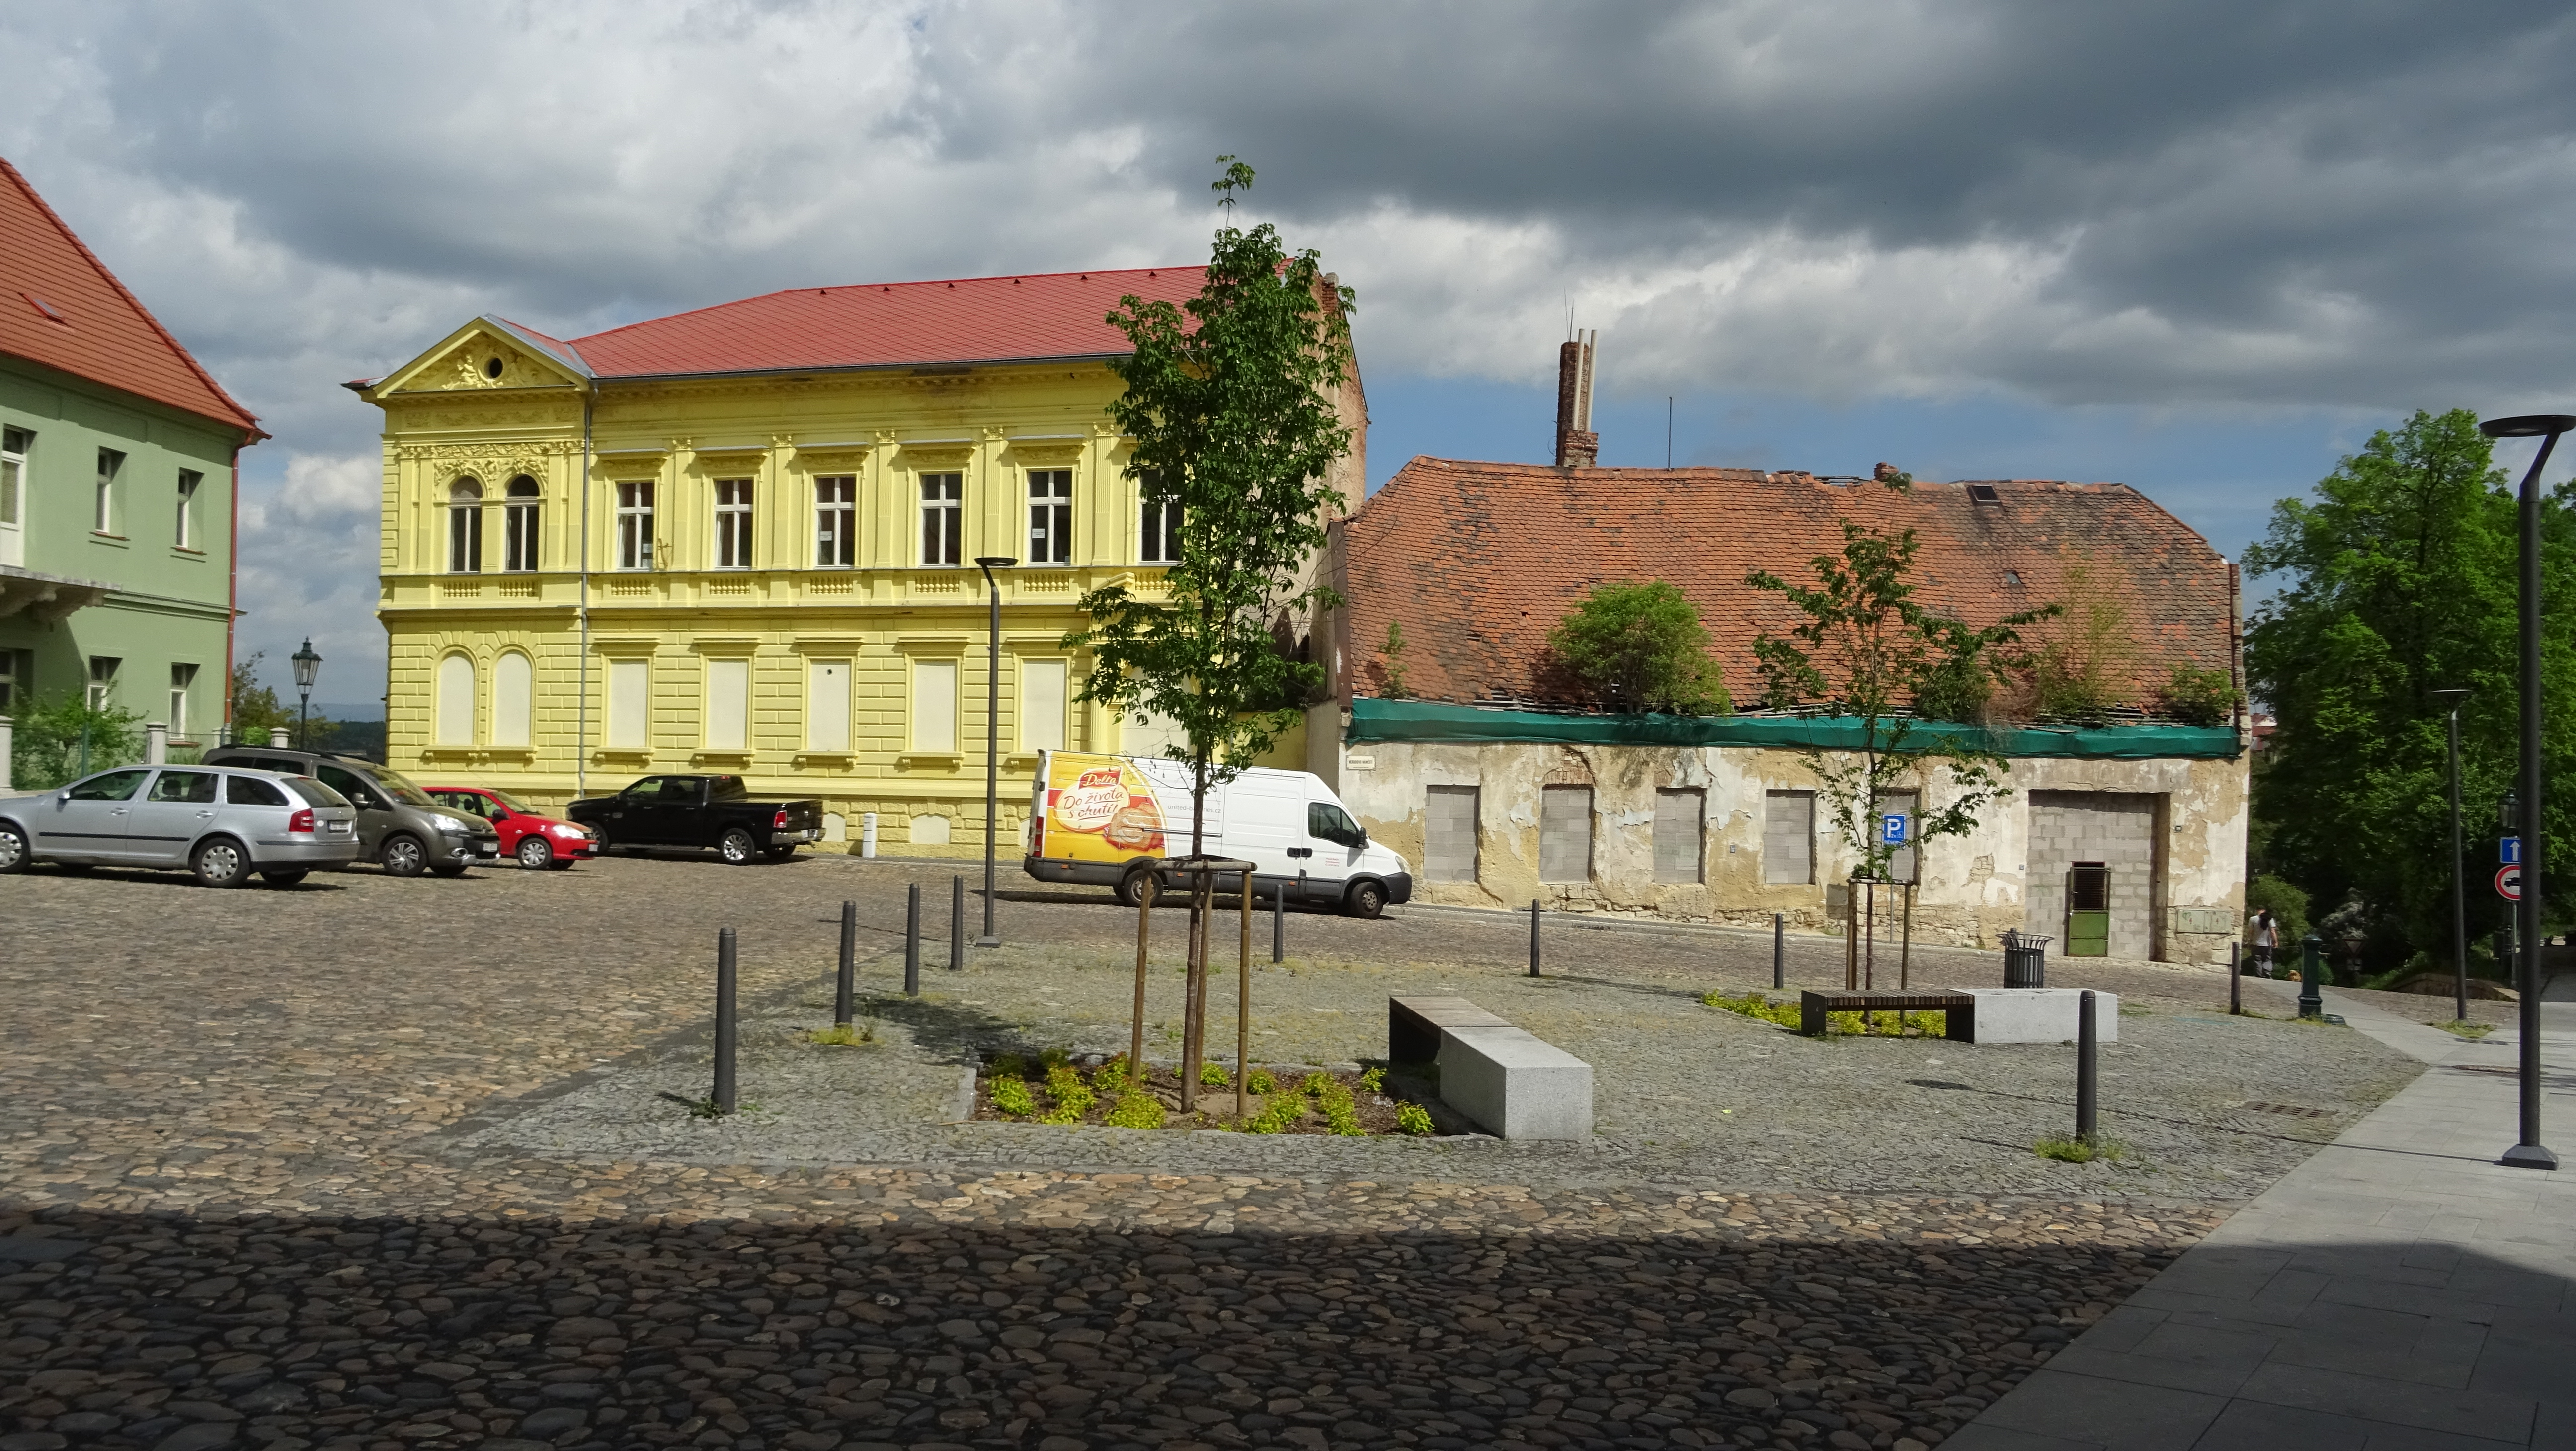 Nejvýstavnější vila na náměstí patřila Wurdingerům